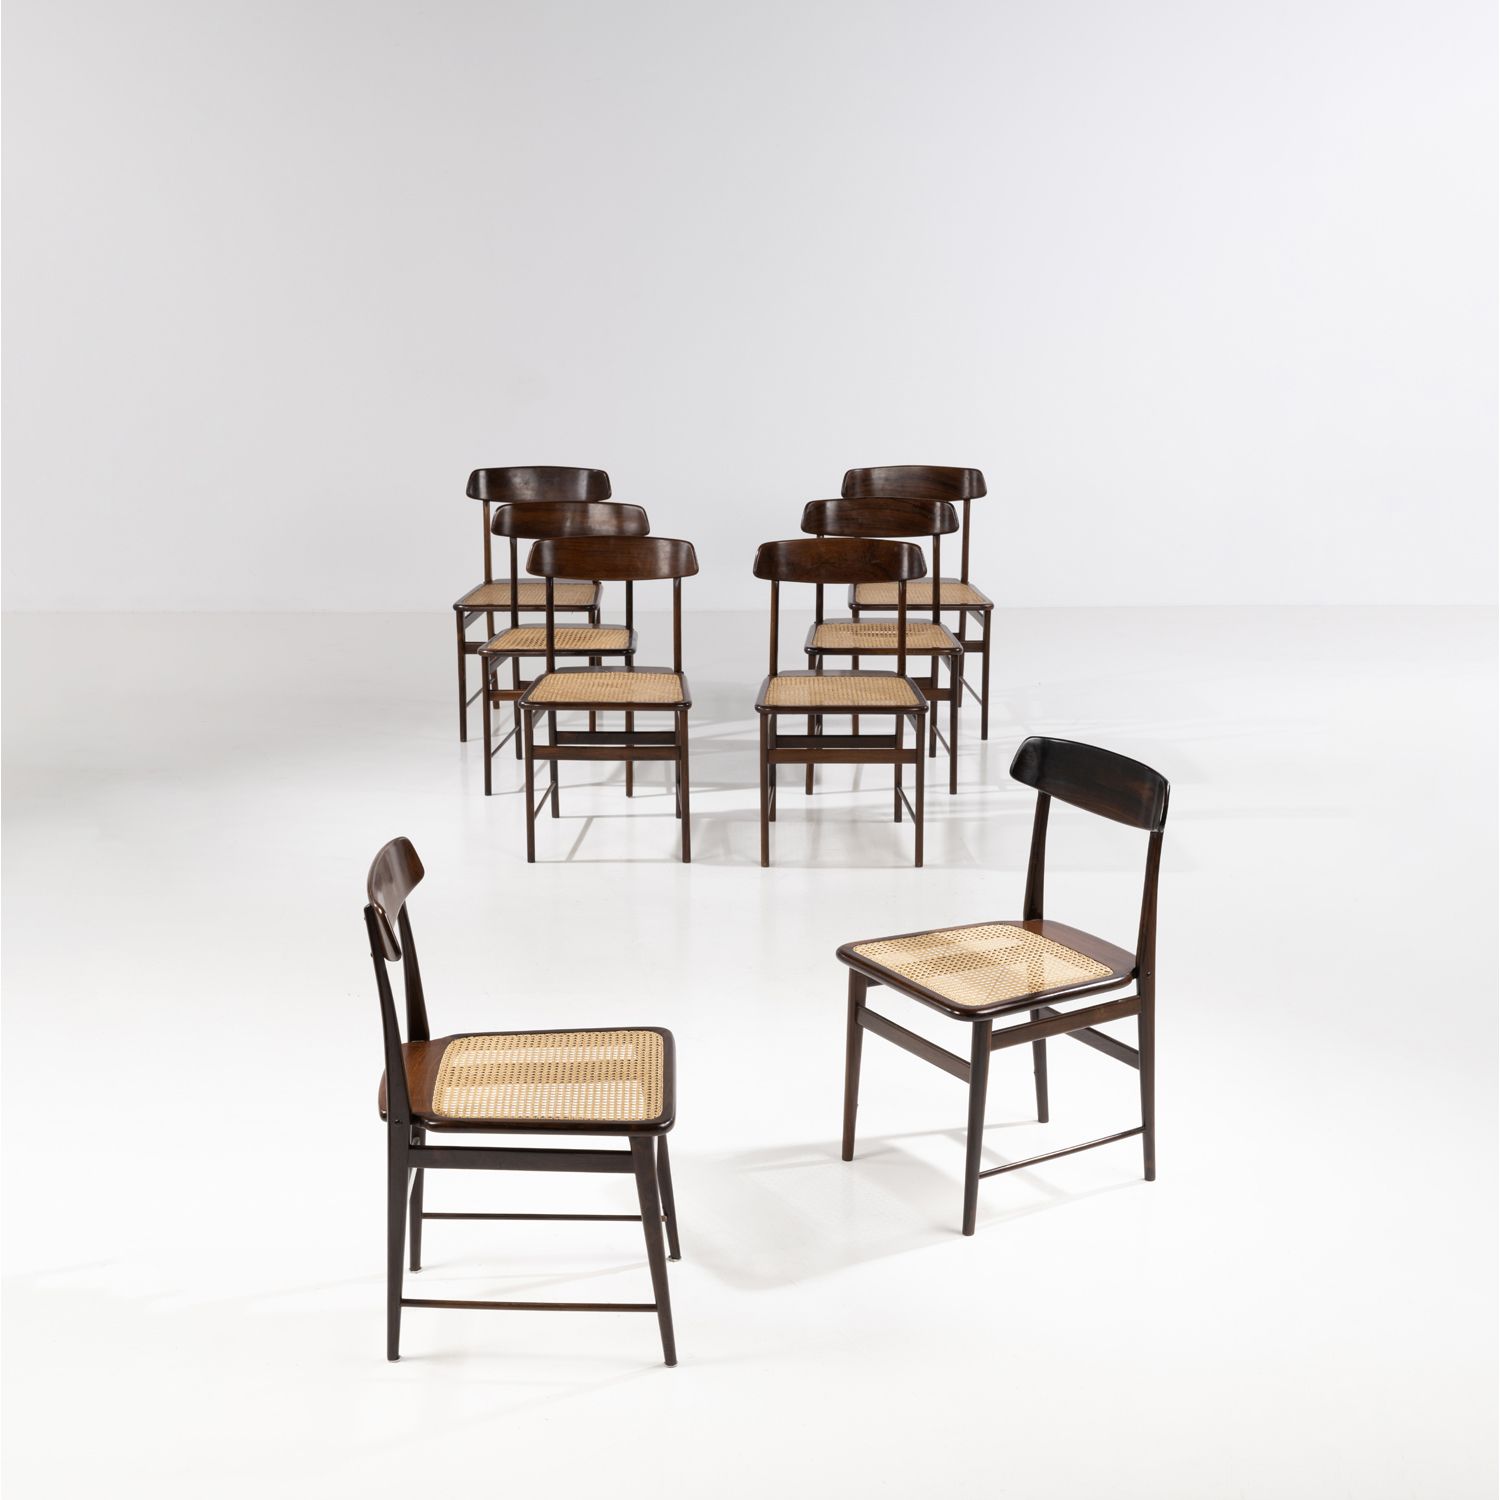 Null 塞尔吉奥-罗德里格斯(1927-2014)

Cadeira Lucio Costa

八张椅子的套间

英布亚木和藤条

1956年左右创建的模型
&hellip;